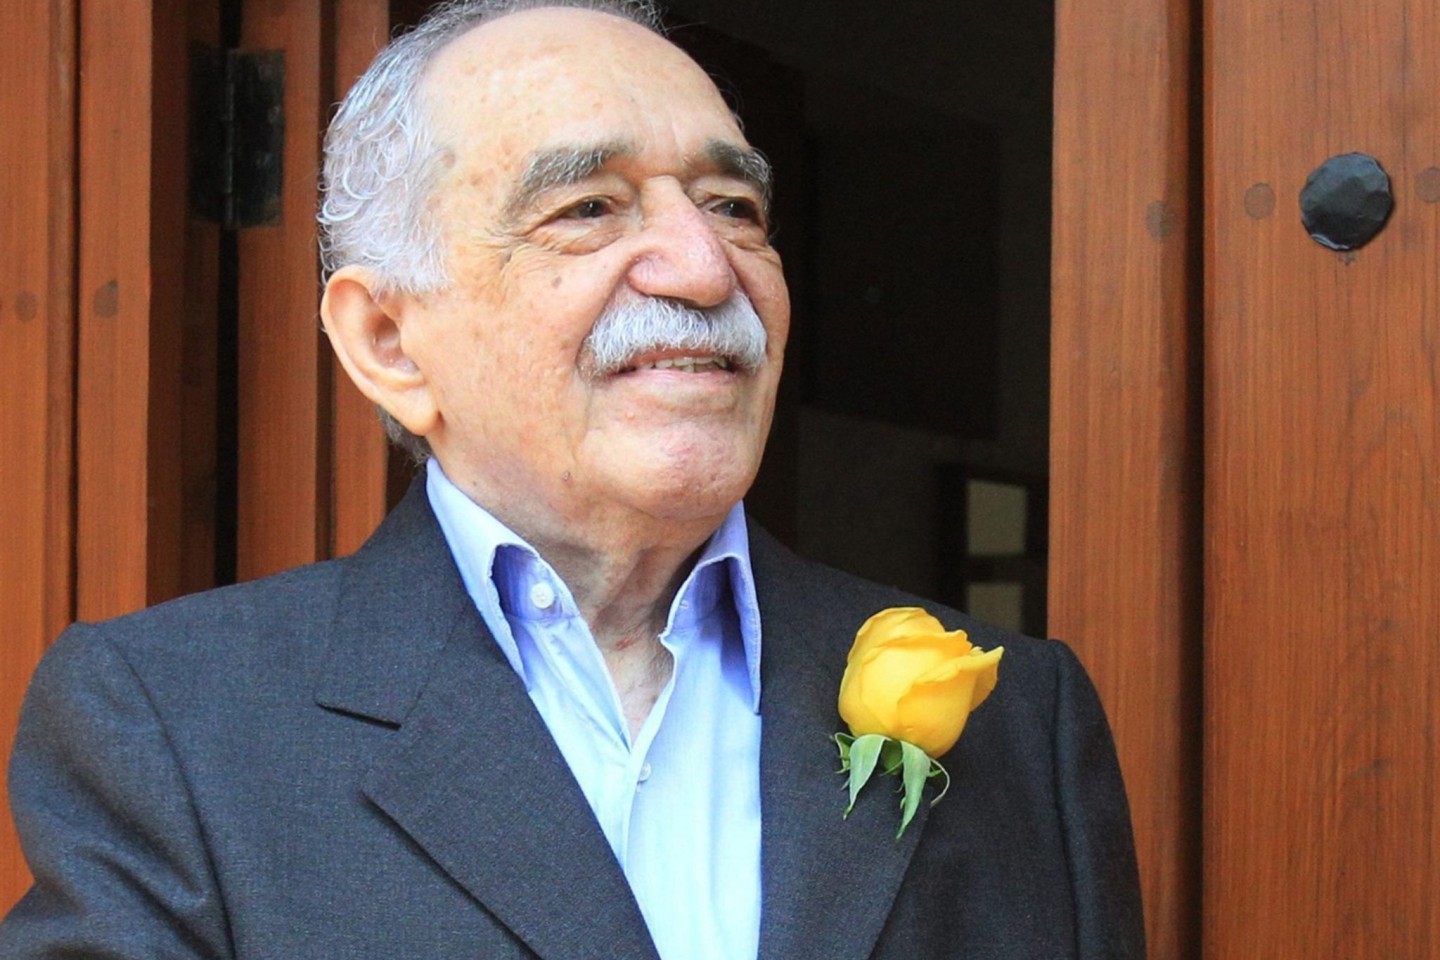 Der Schriftsteller Gabriel Garcia Marquez lächelt vor seinem Haus in Mexiko-Stadt. Mehr als sieben Jahre nach dem Tod des kolumbianischen Schriftstellers wird seine Garderobe veräußert.